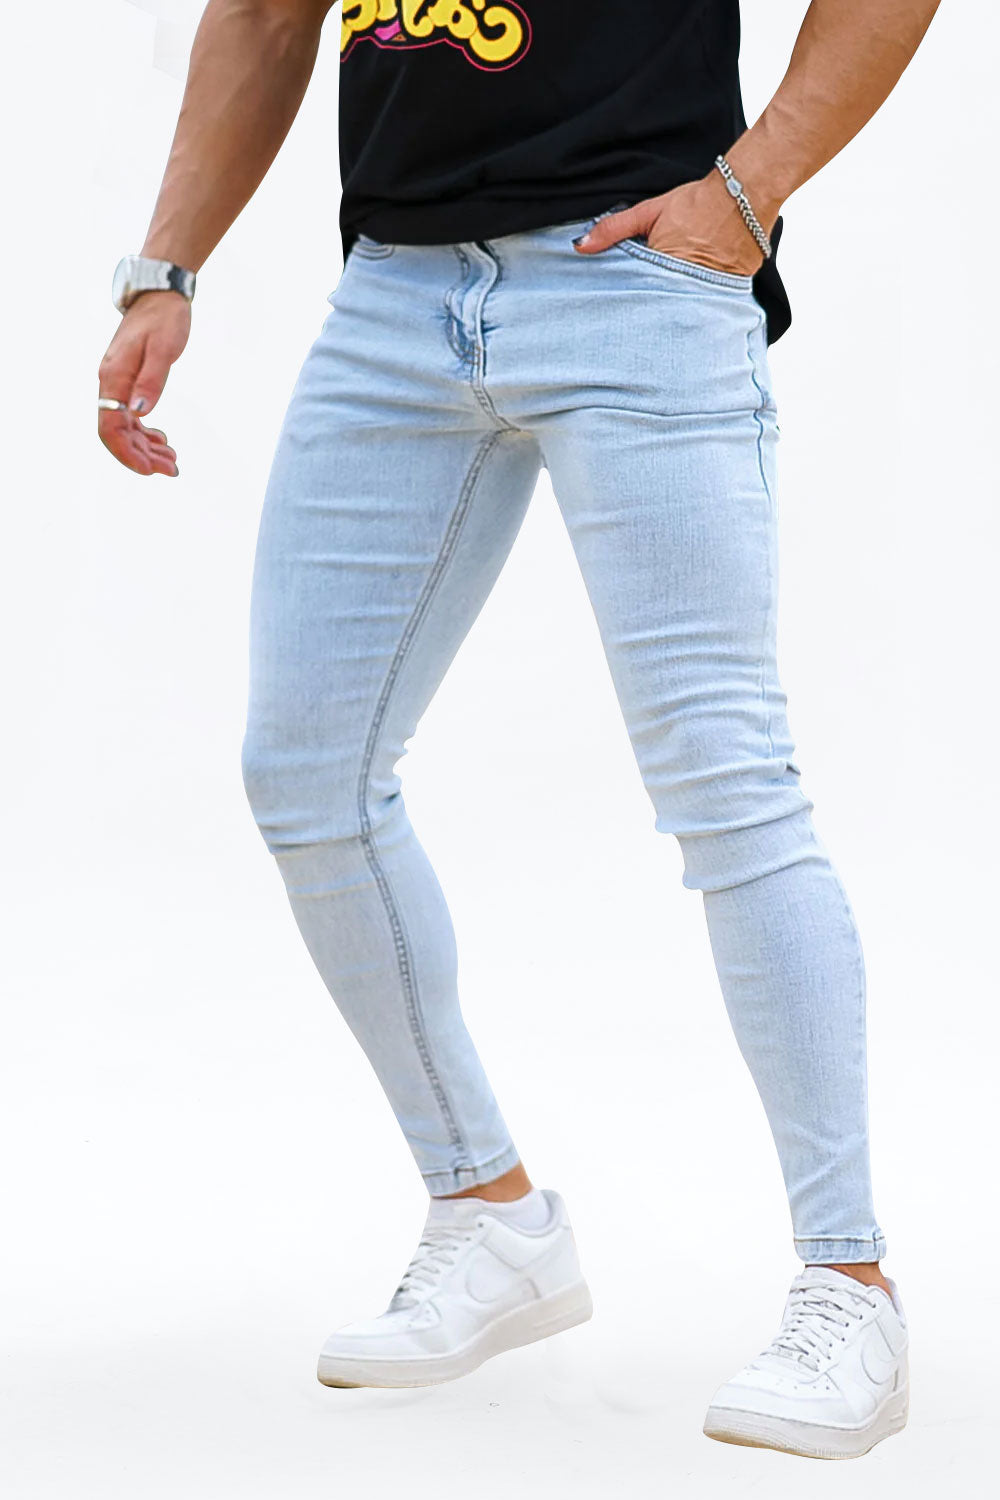 men's light blue high-waisted skinny jeans